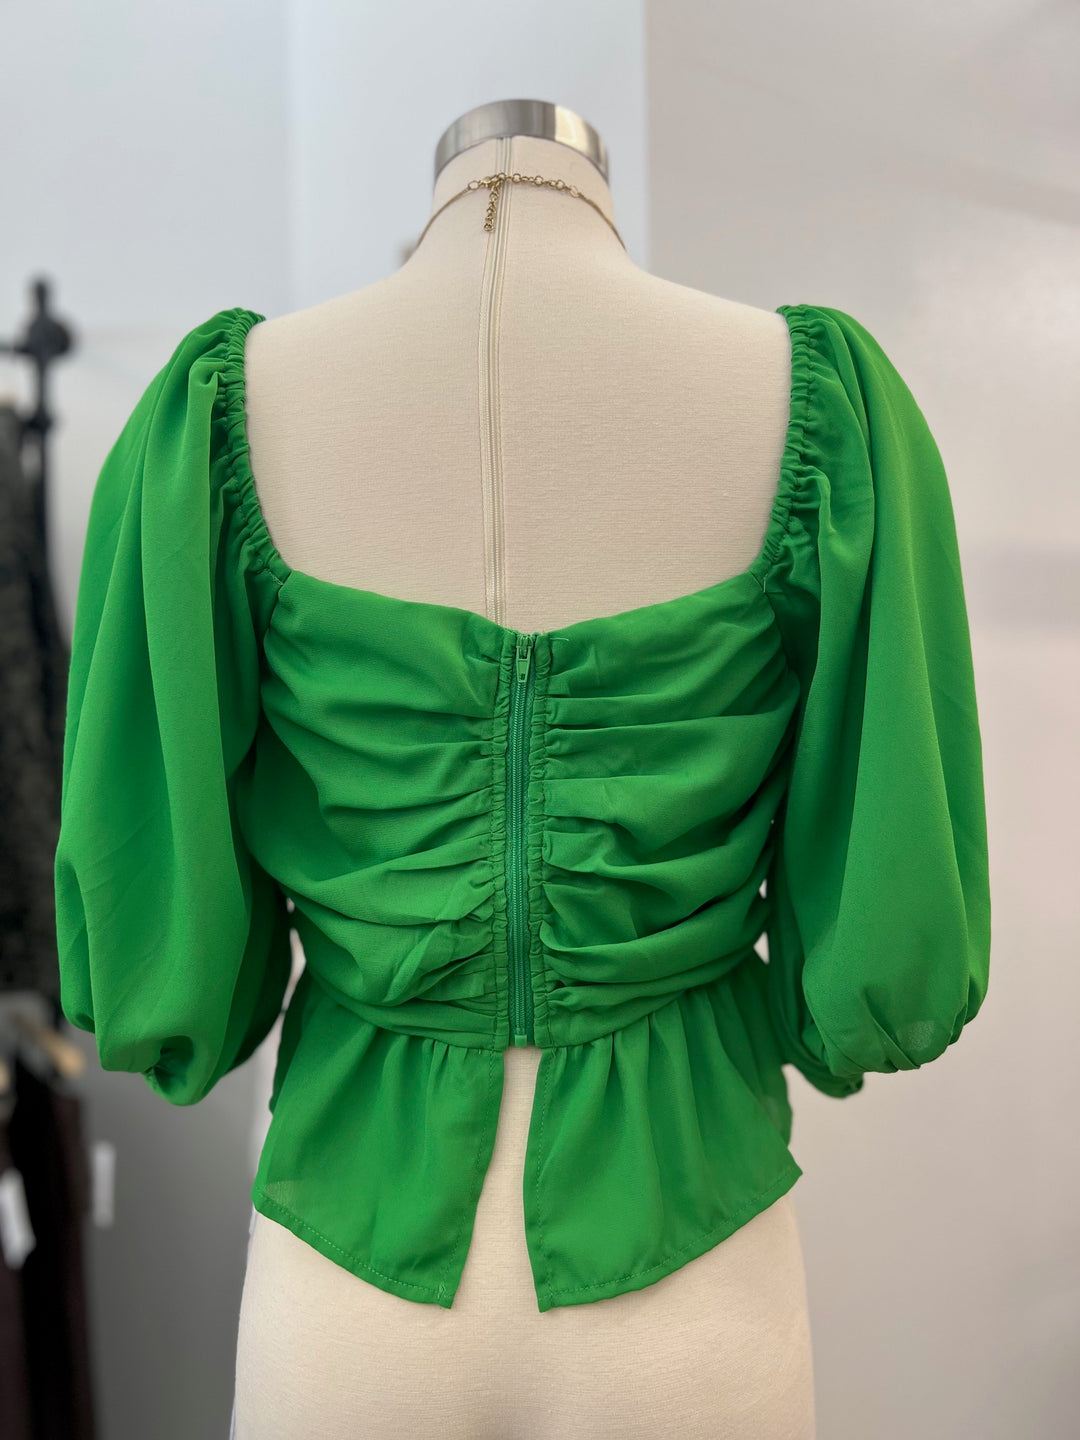 Women's astro green solid top with sweetheart tie neckline